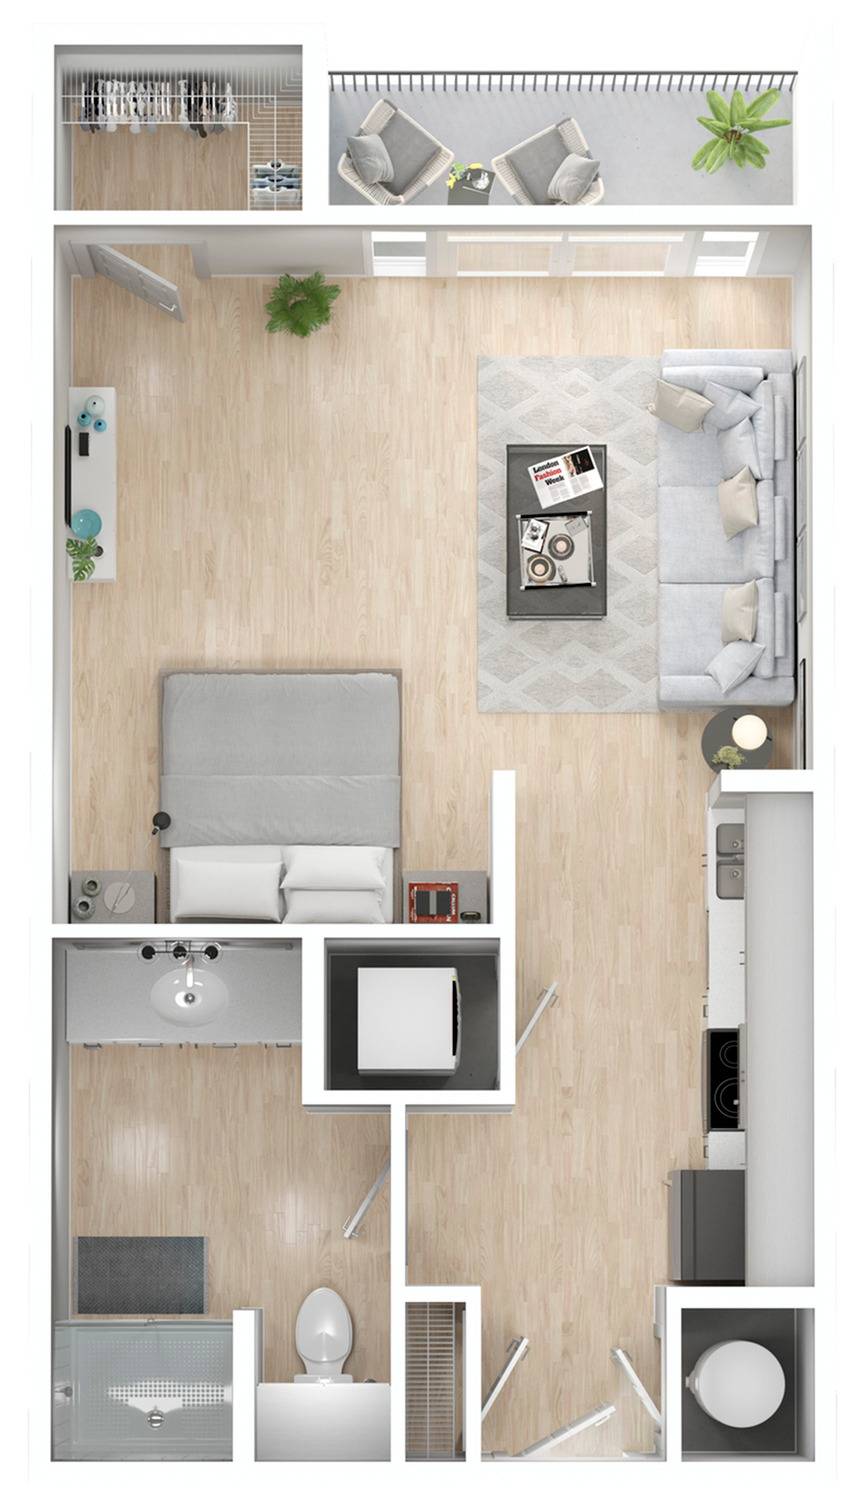 S2 Floor Plan Image